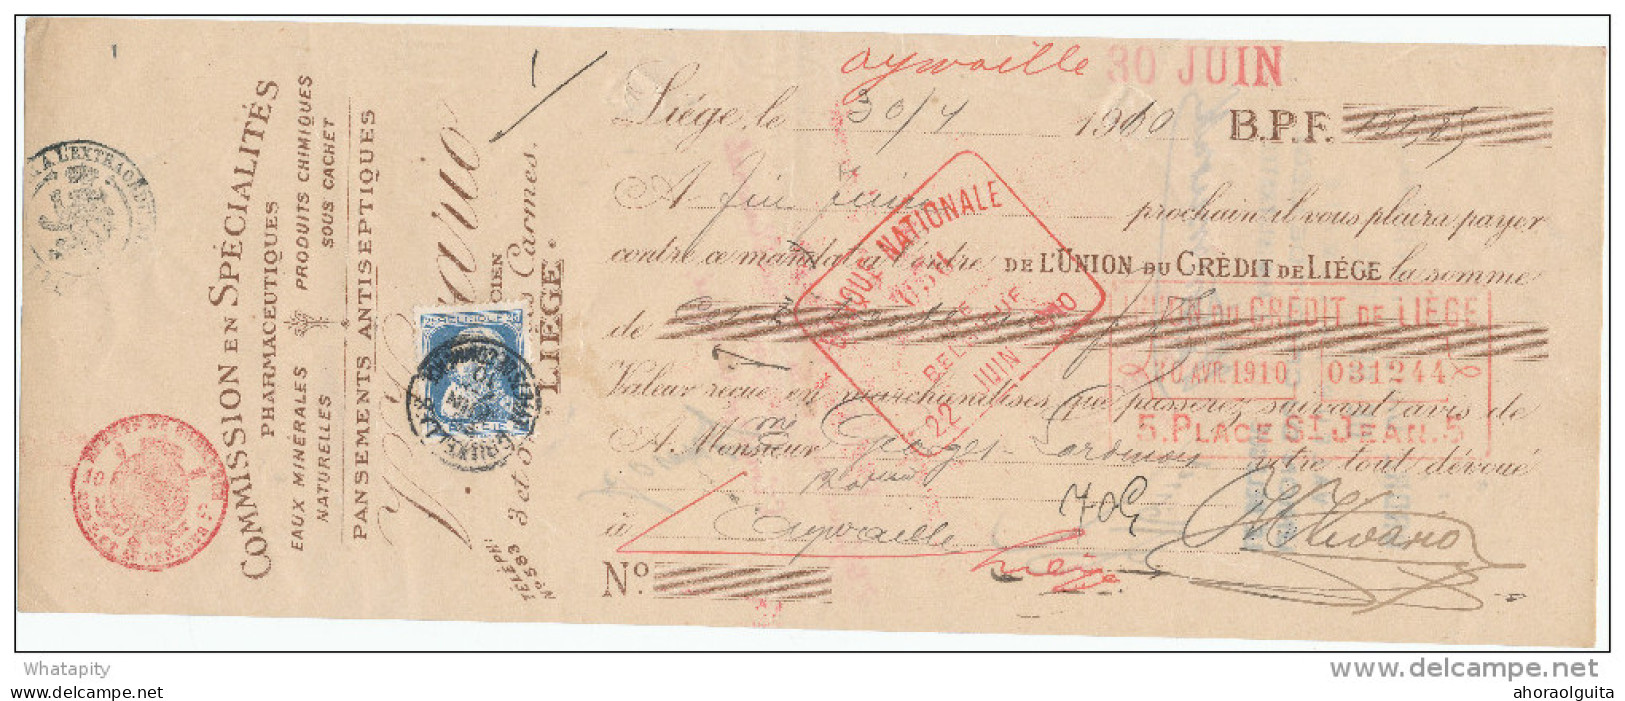 BELGIQUE - Document Financier Via Poste Belge 1910 - Spécialités En Pharmacie Vivario à LIEGE  -- VV429 - Pharmacie